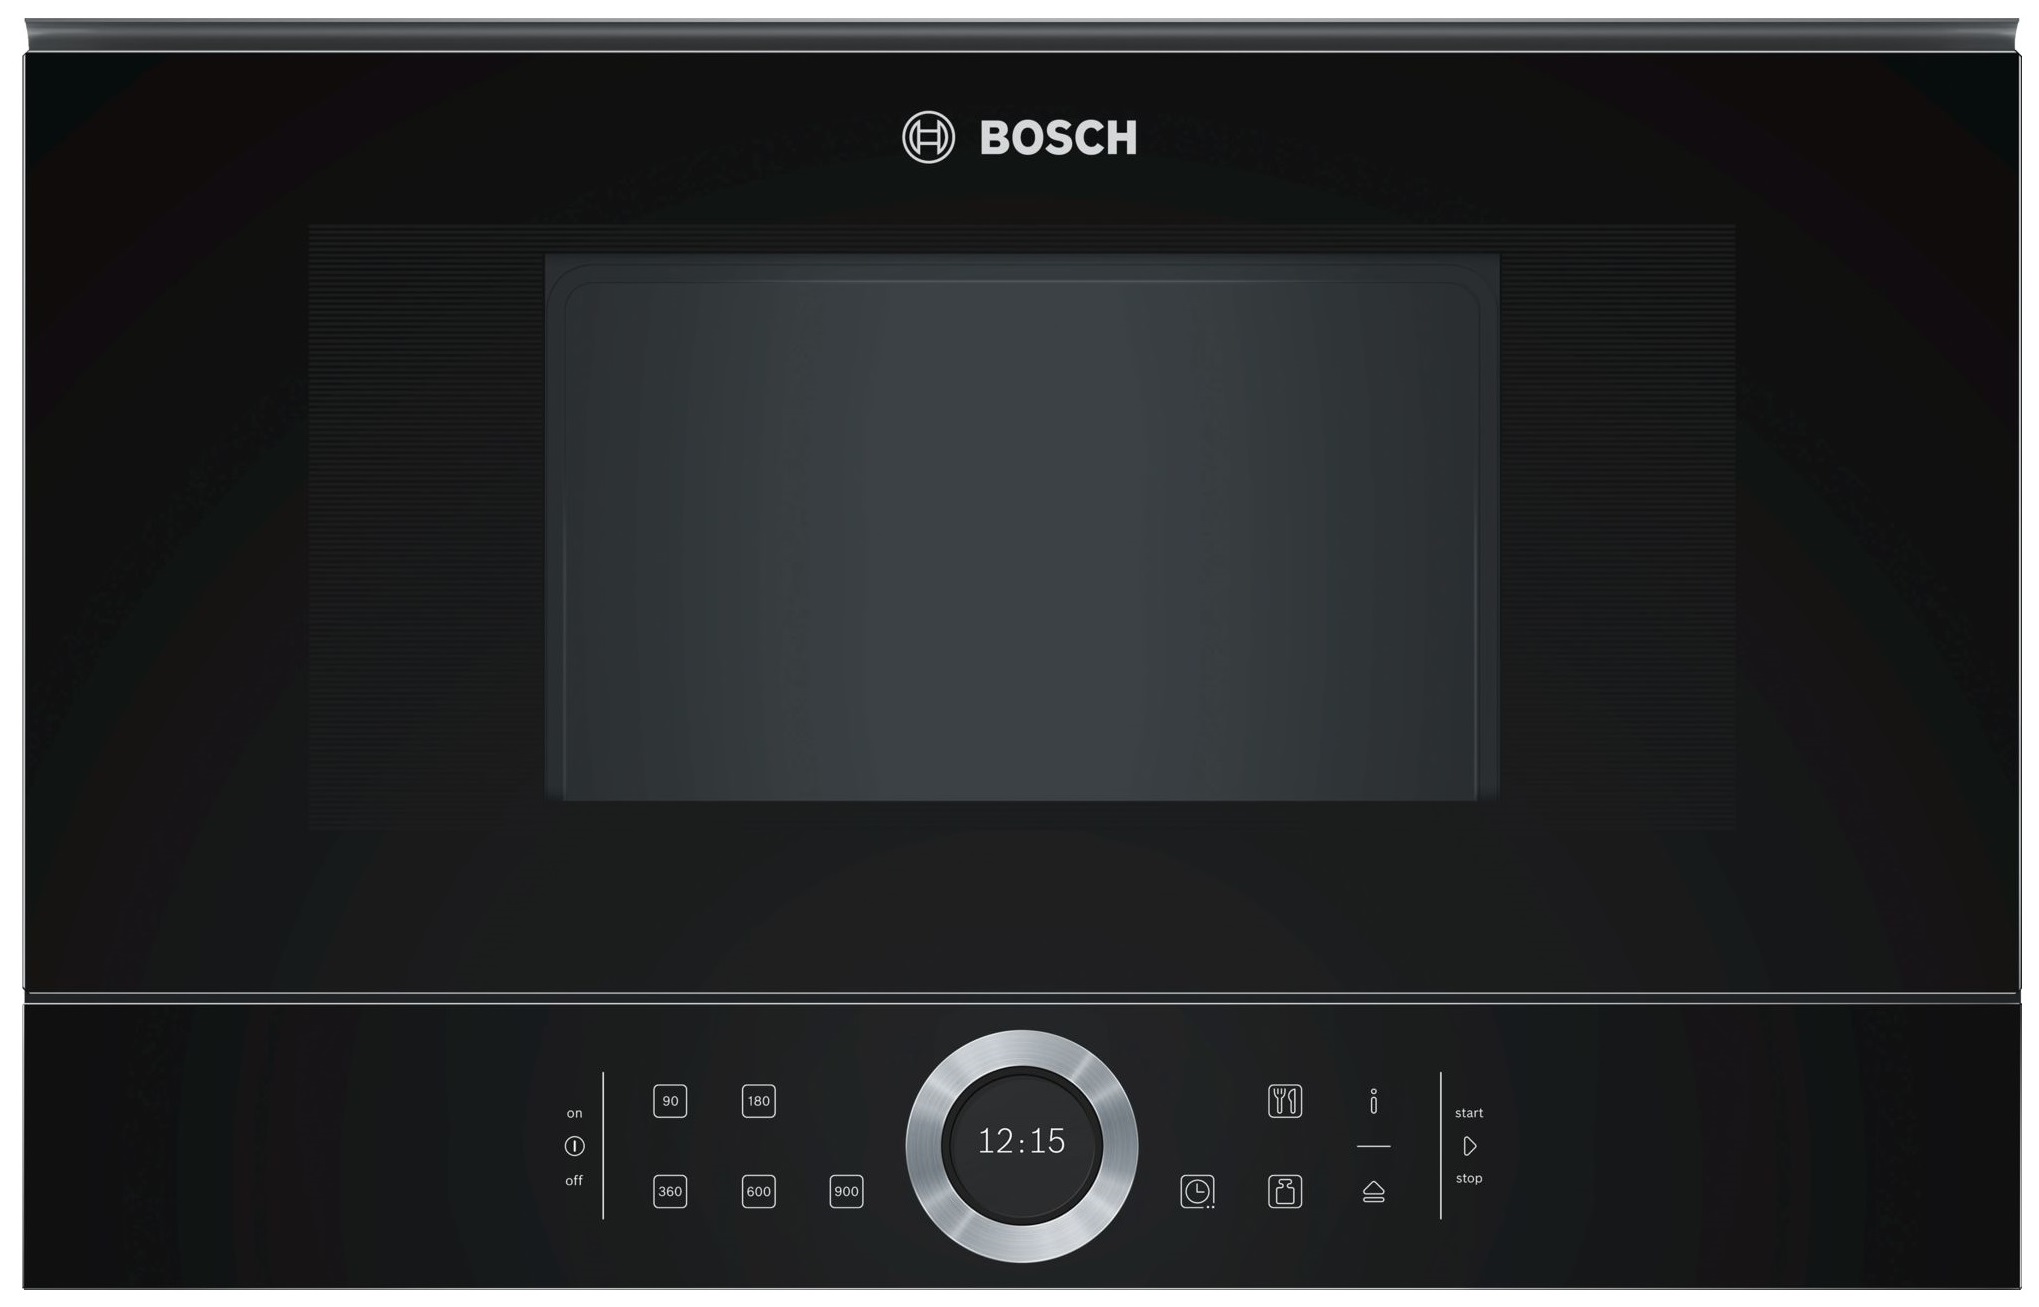 Встраиваемая микроволновая печь Bosch BFL634GB1 Black встраиваемая микроволновая печь bosch bfl634gw1 white